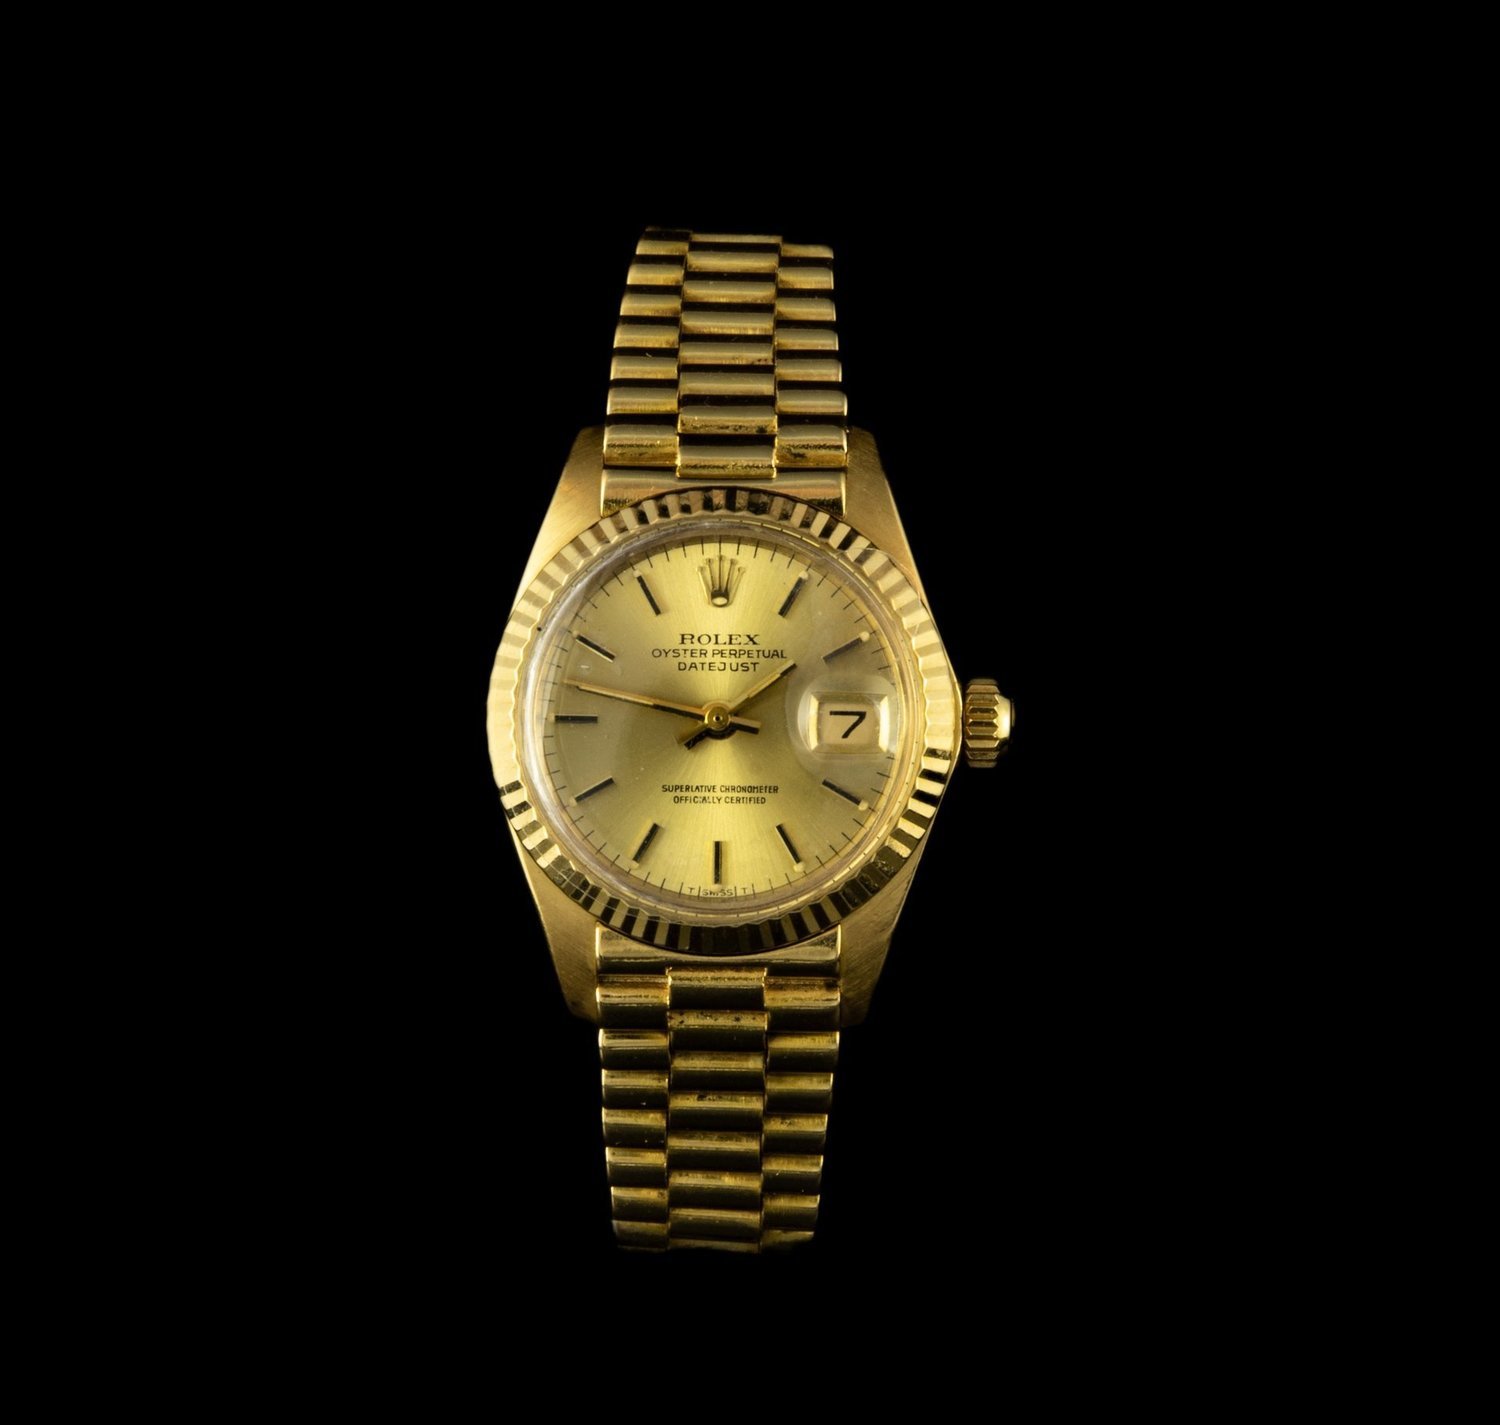 Reloj Rolex Oyster Perpetual Date en oro con cristal plexiglas de cuerda.  24 mm.